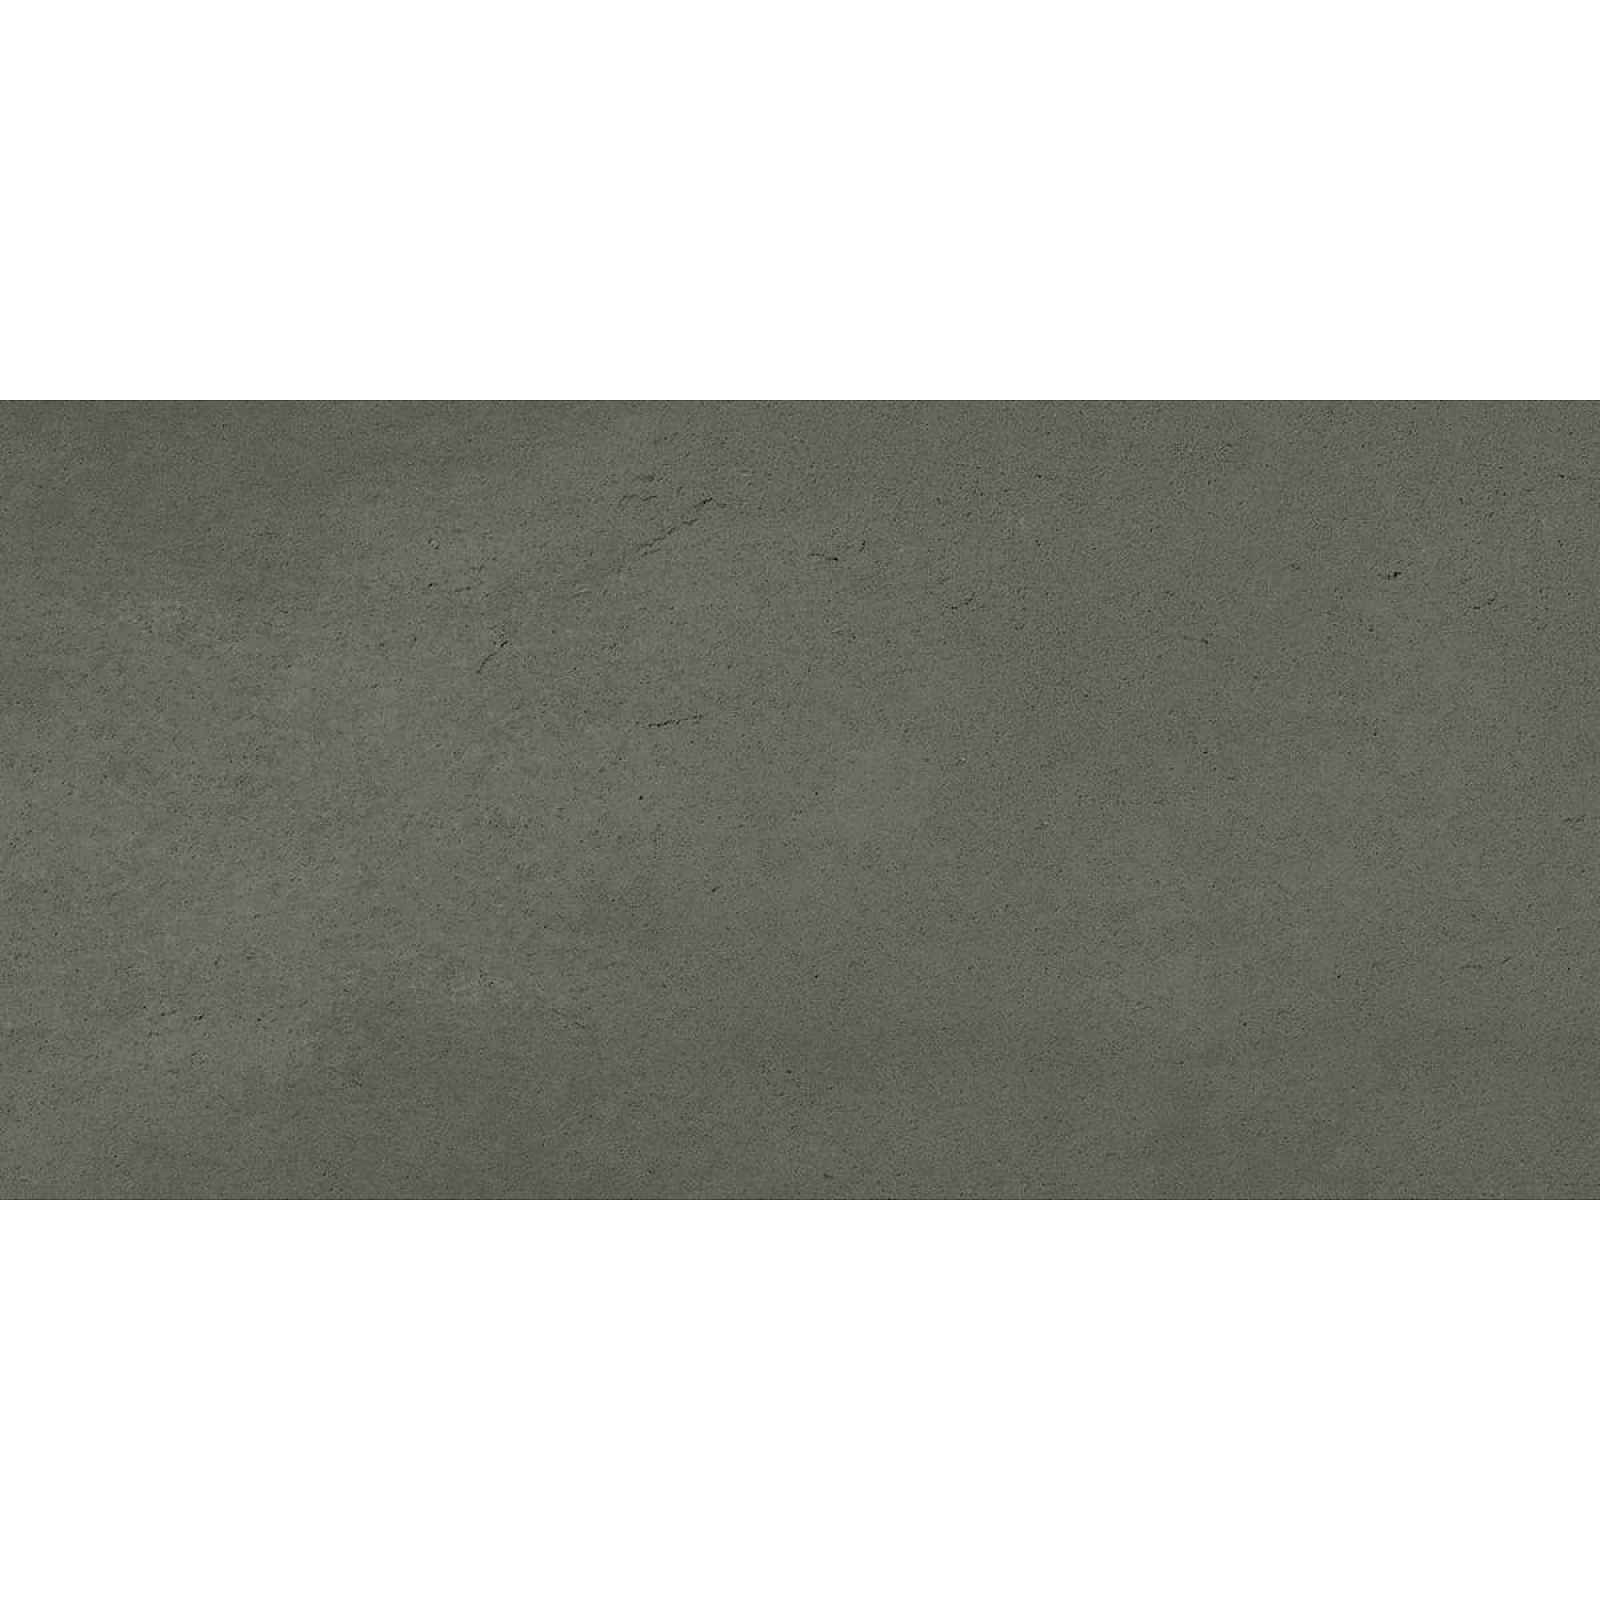 Dlažba Graniti Fiandre Core Shade ashy core 60x120 cm pololesk A177R964